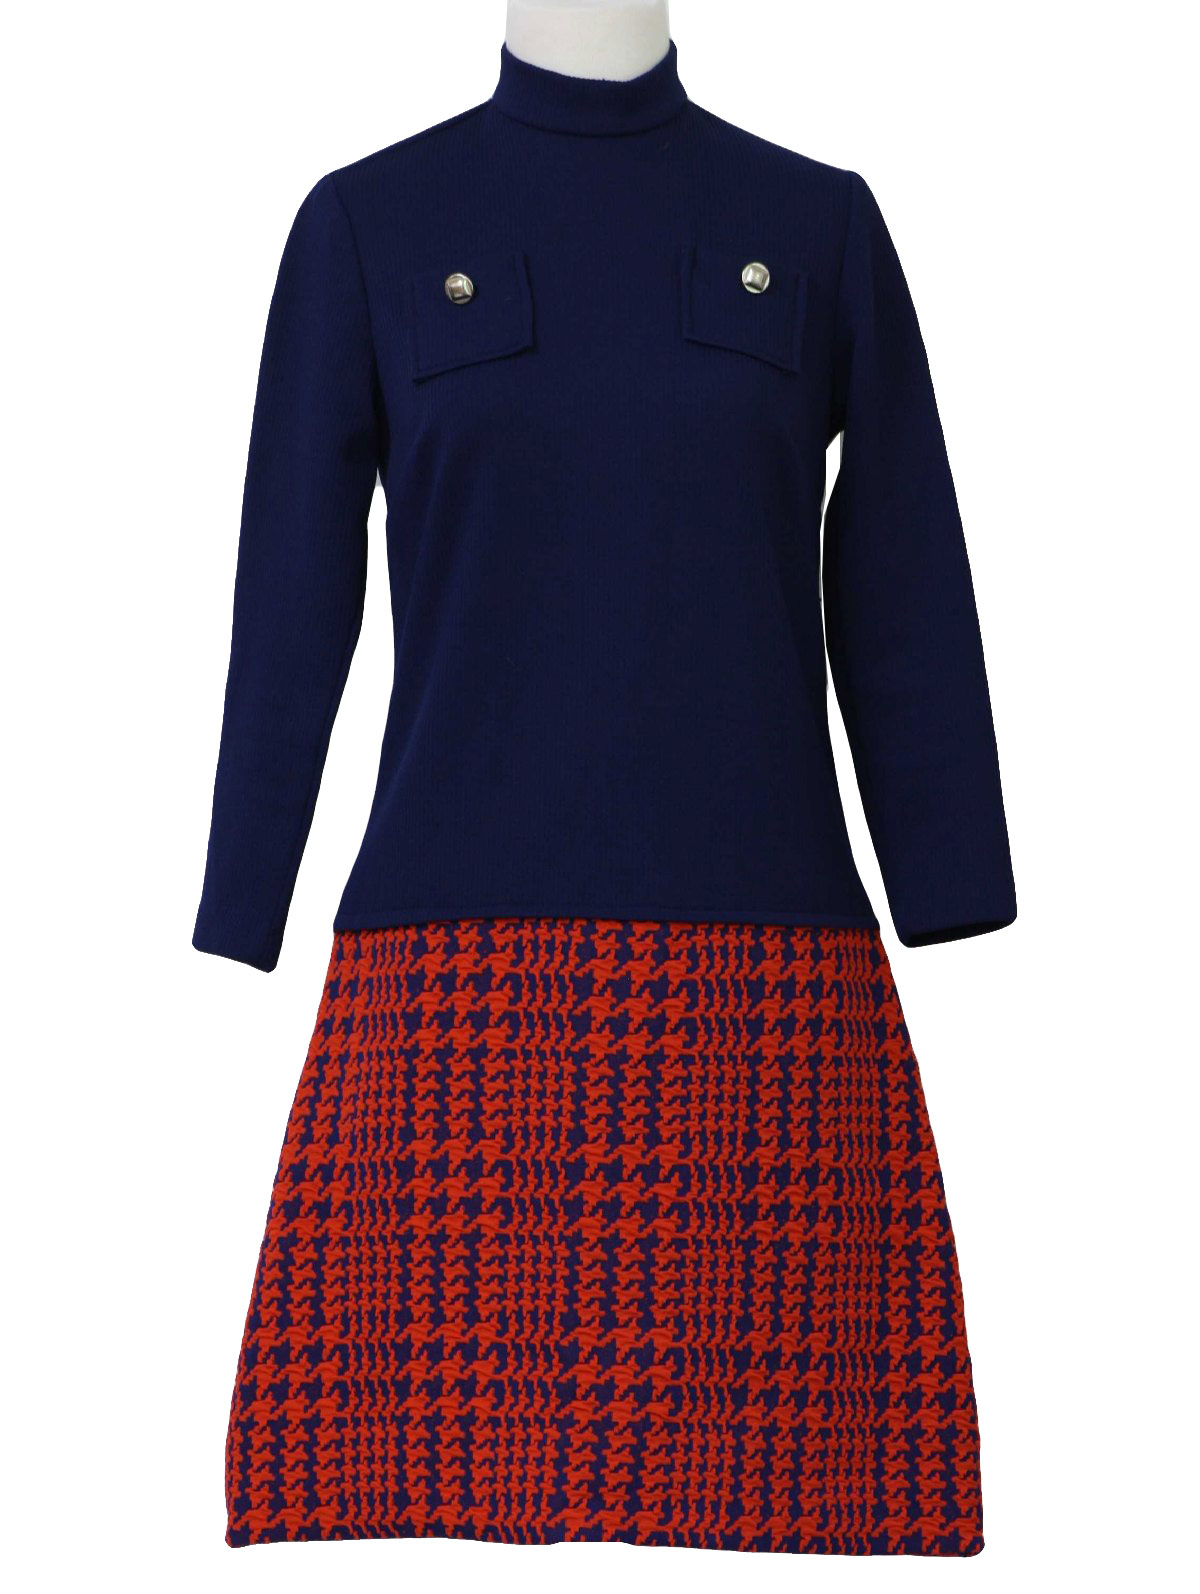 70s Retro Dress: 70s -Happenings- Womens navy blue rib knit and navy